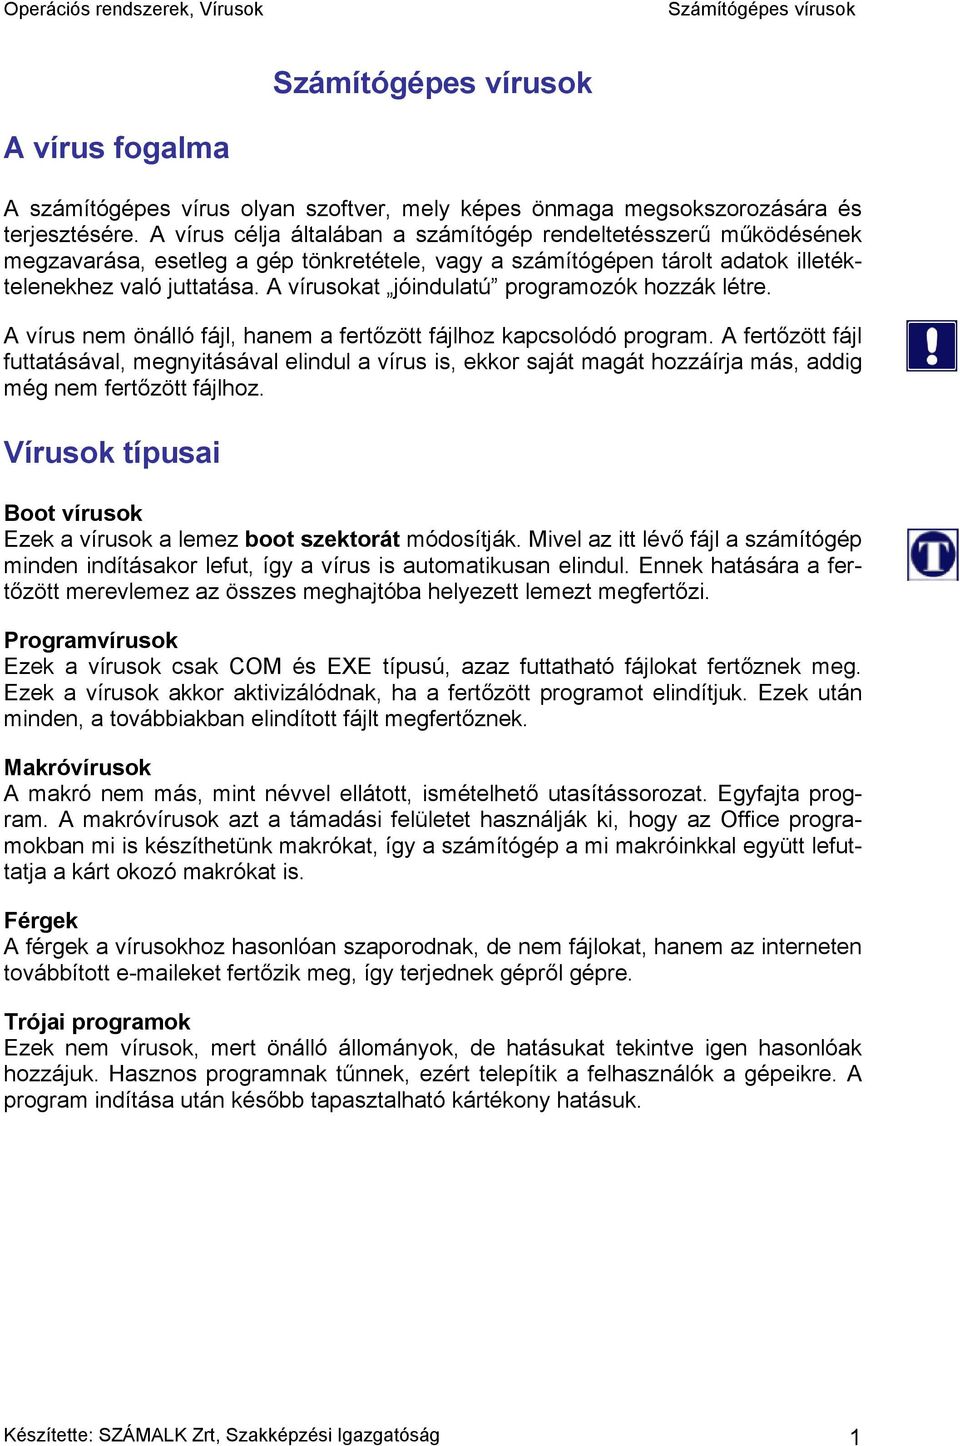 Számítógépes vírusok - PDF Free Download